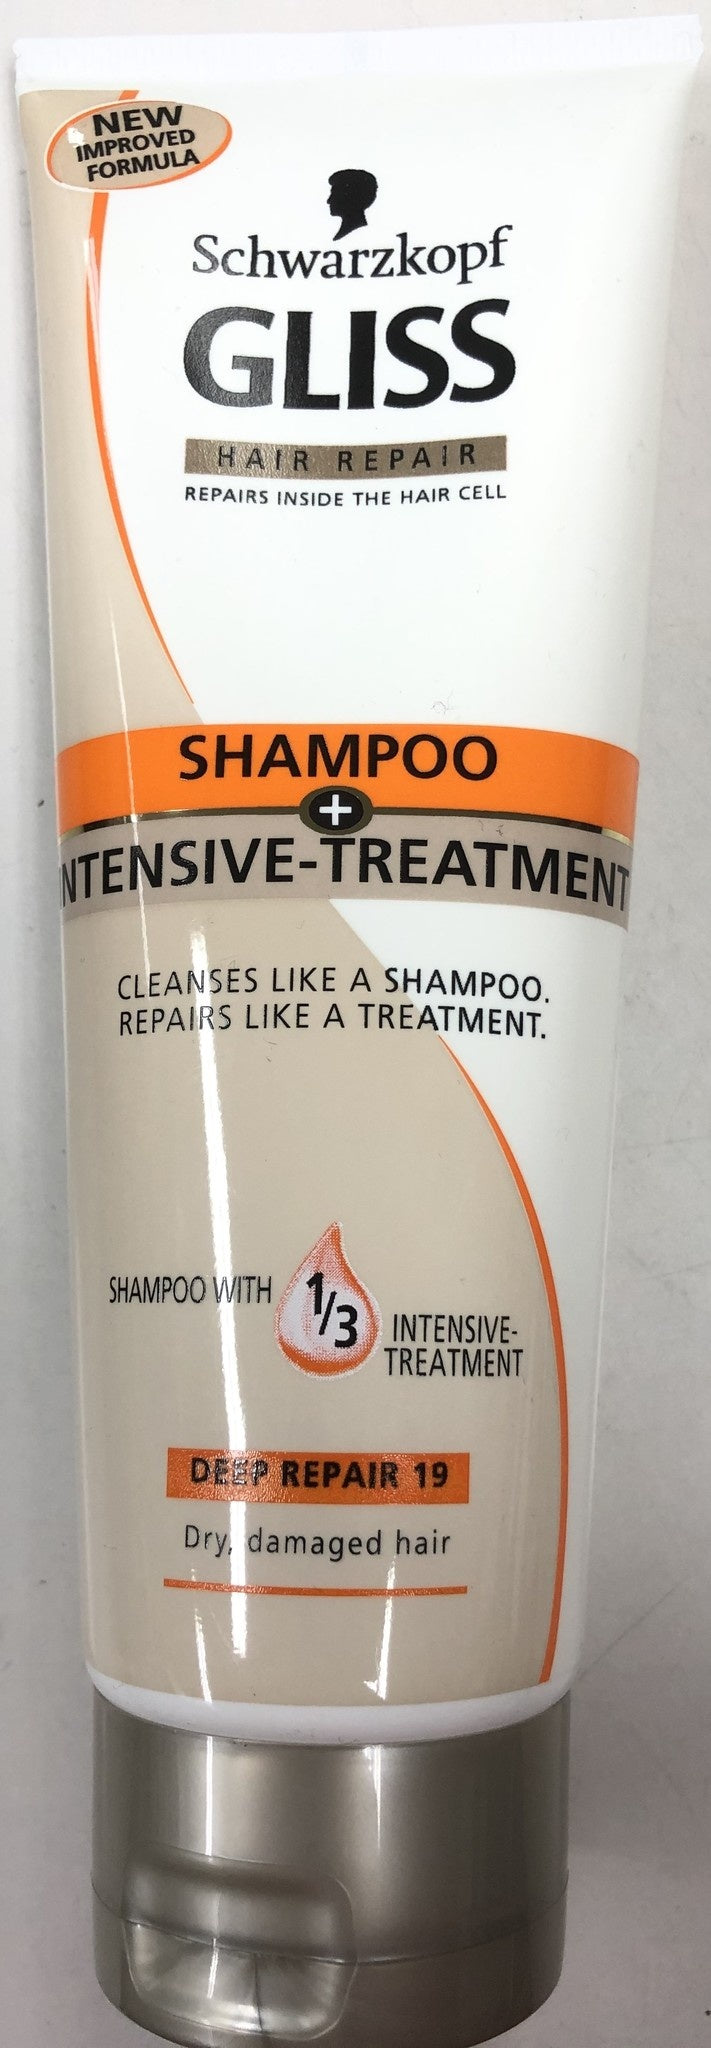 Gliss Kur Shampoo Intensive Treatment 250 Ml